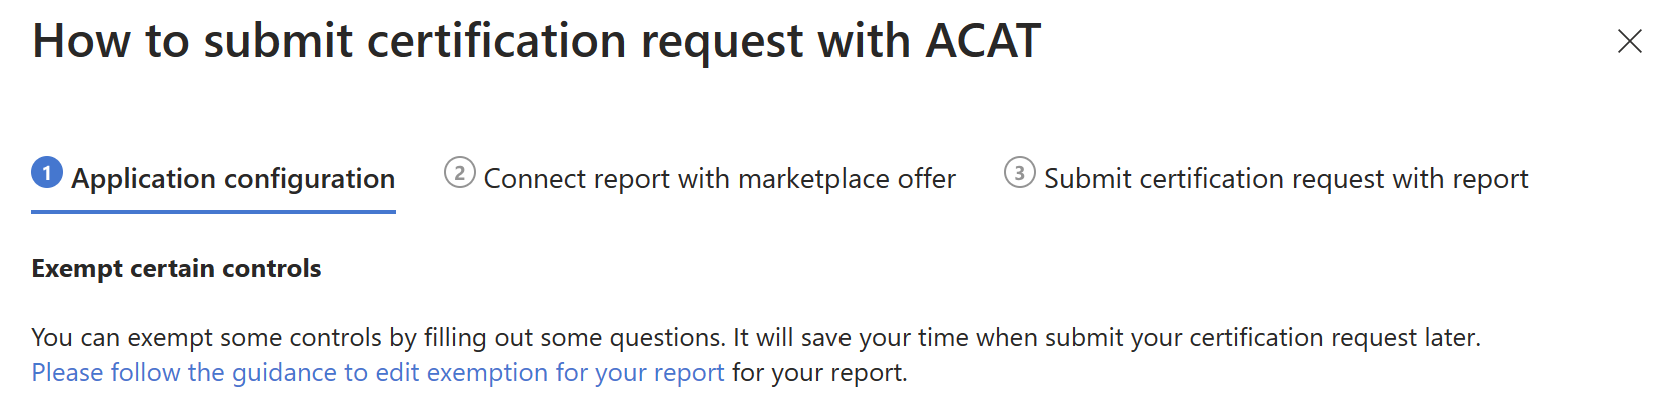 Руководство по отправке сертификации в ACAT